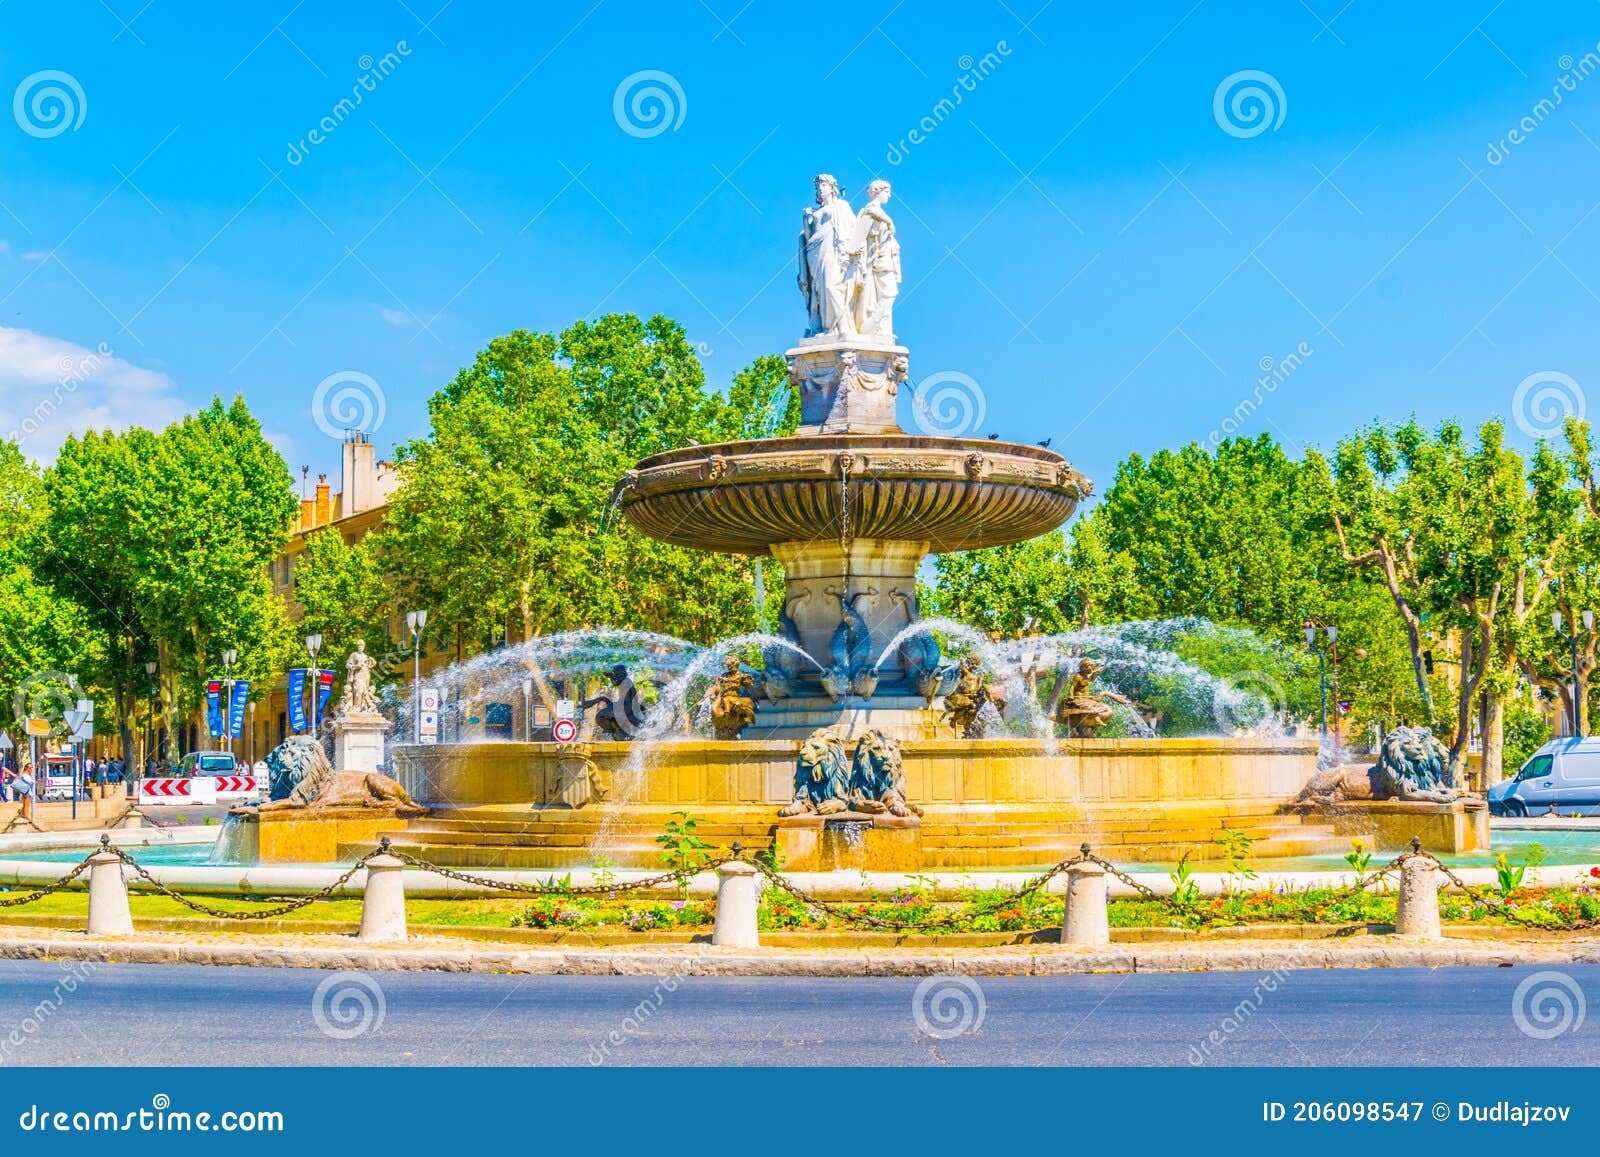 Fontaine De La Rotonde at Aix-en-Provence, France Stock Image - Image ...